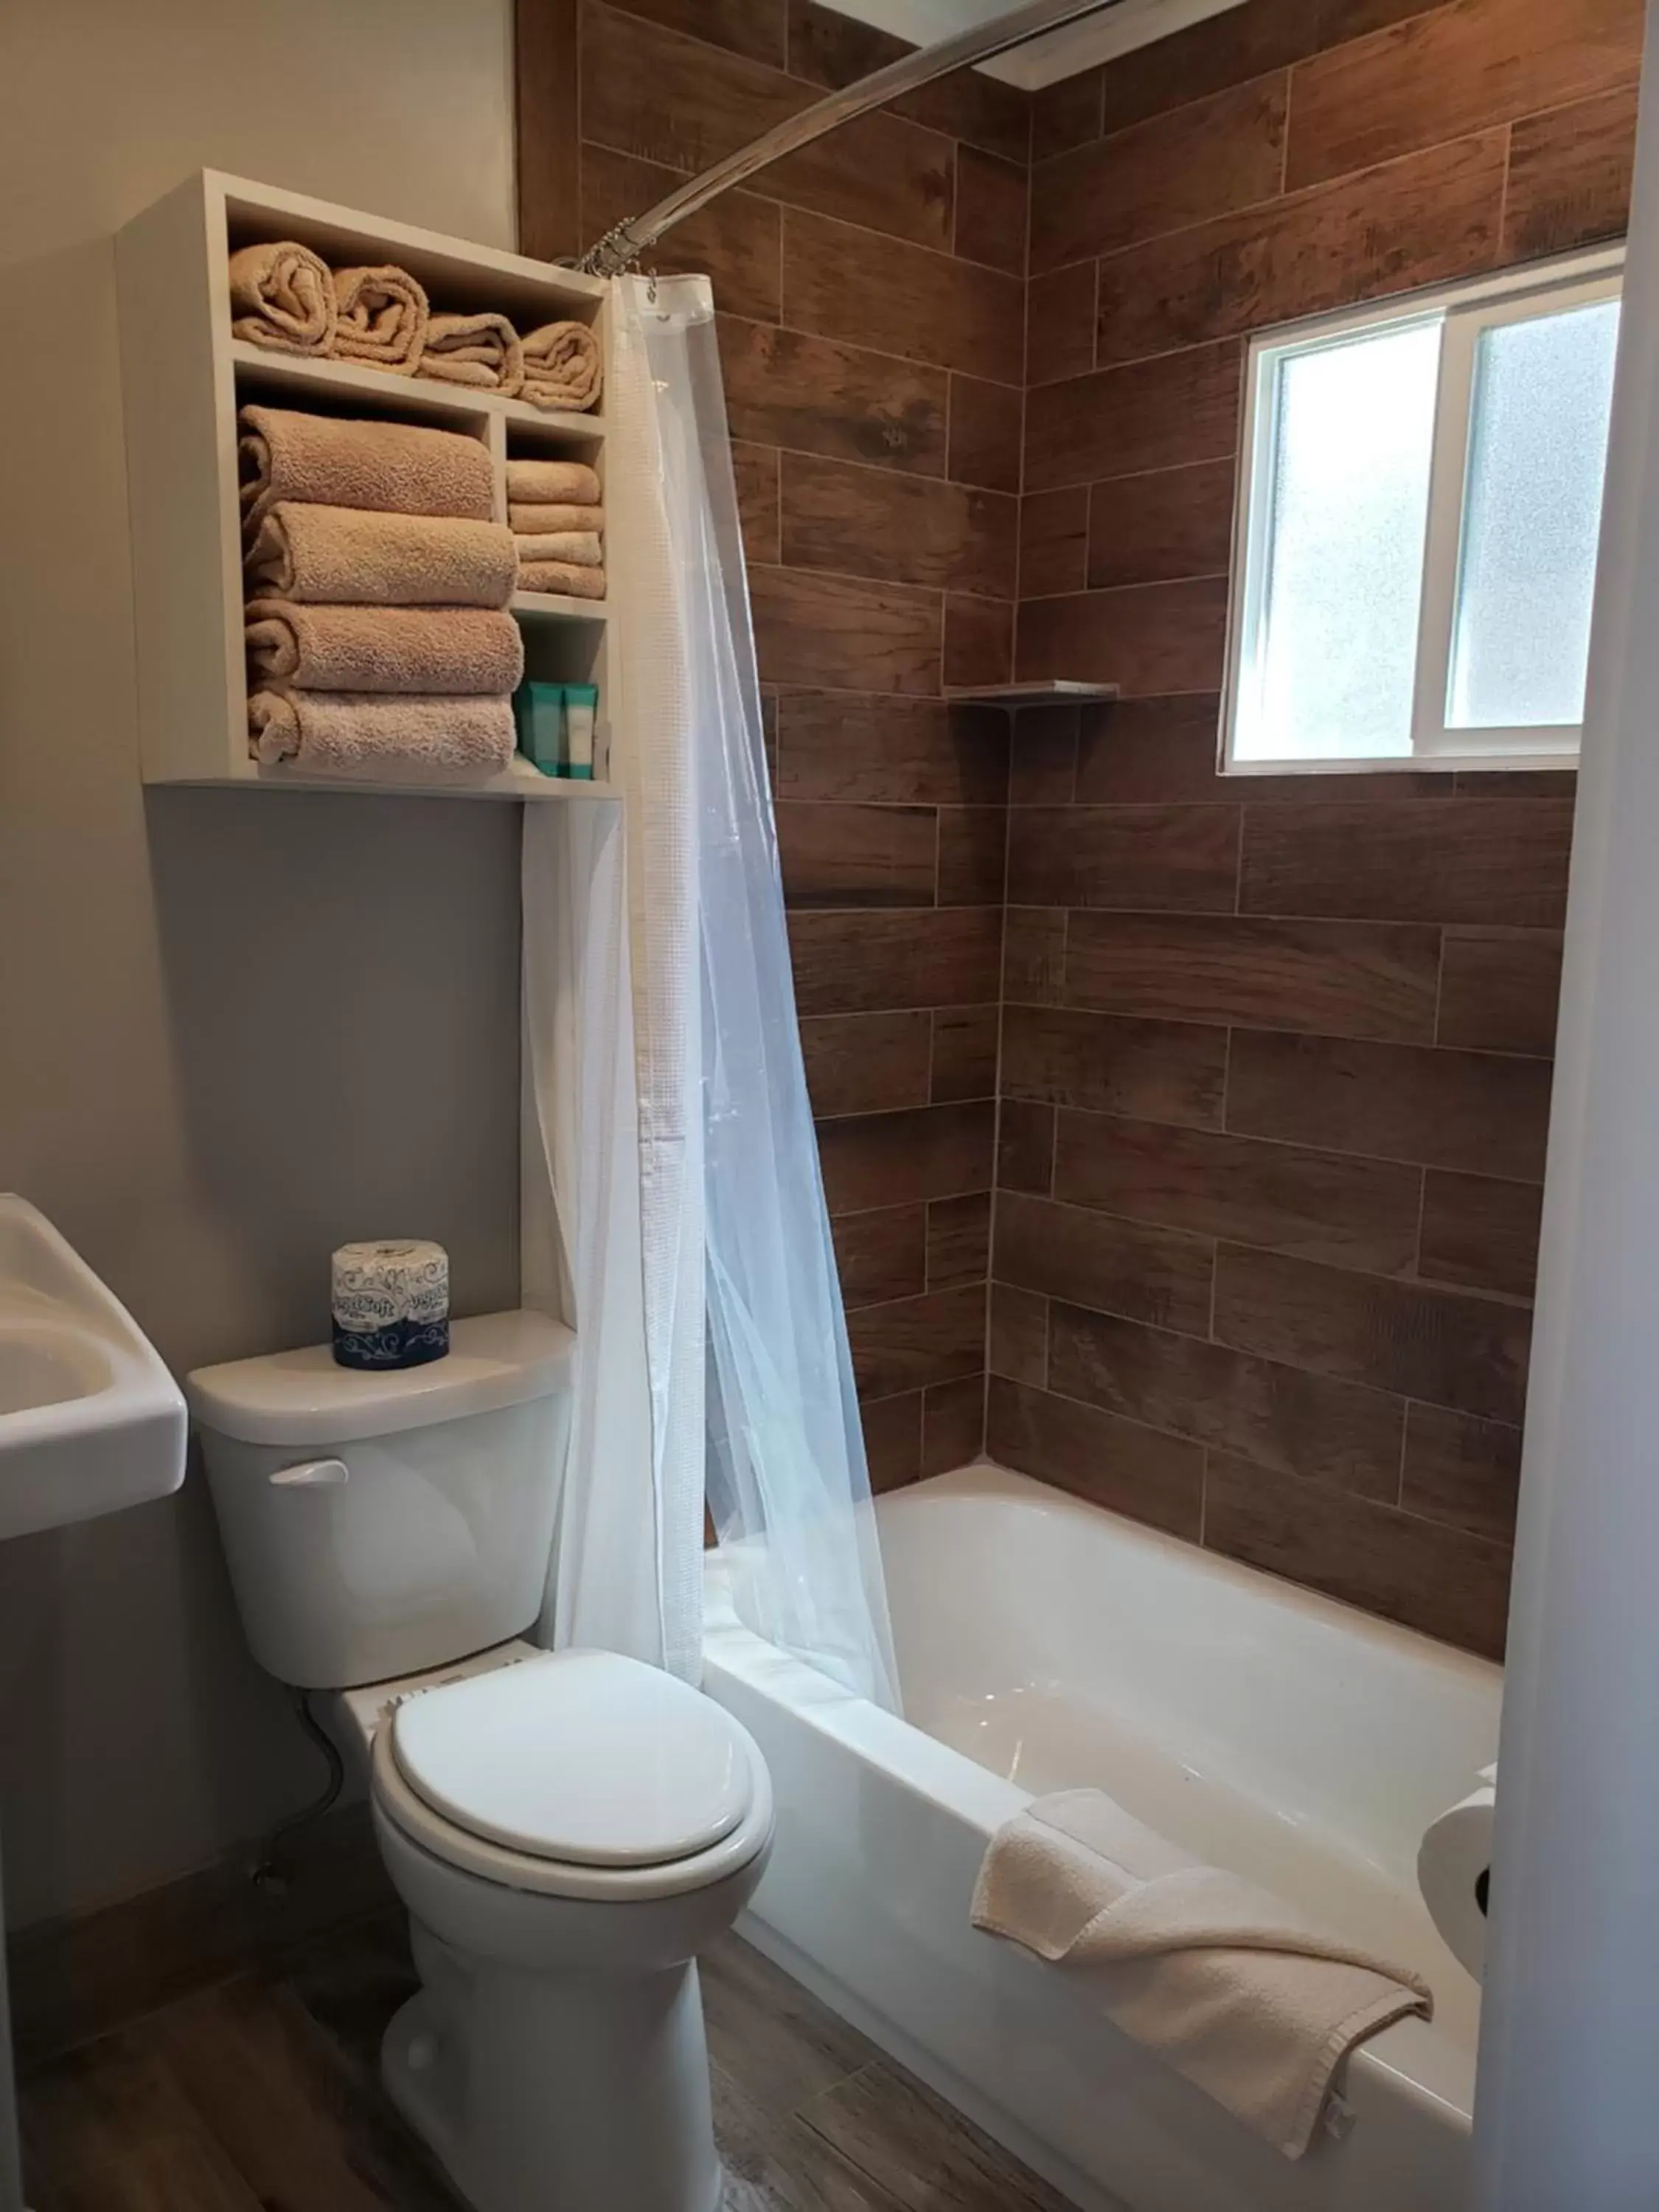 Toilet, Bathroom in Flaming Gorge Resort